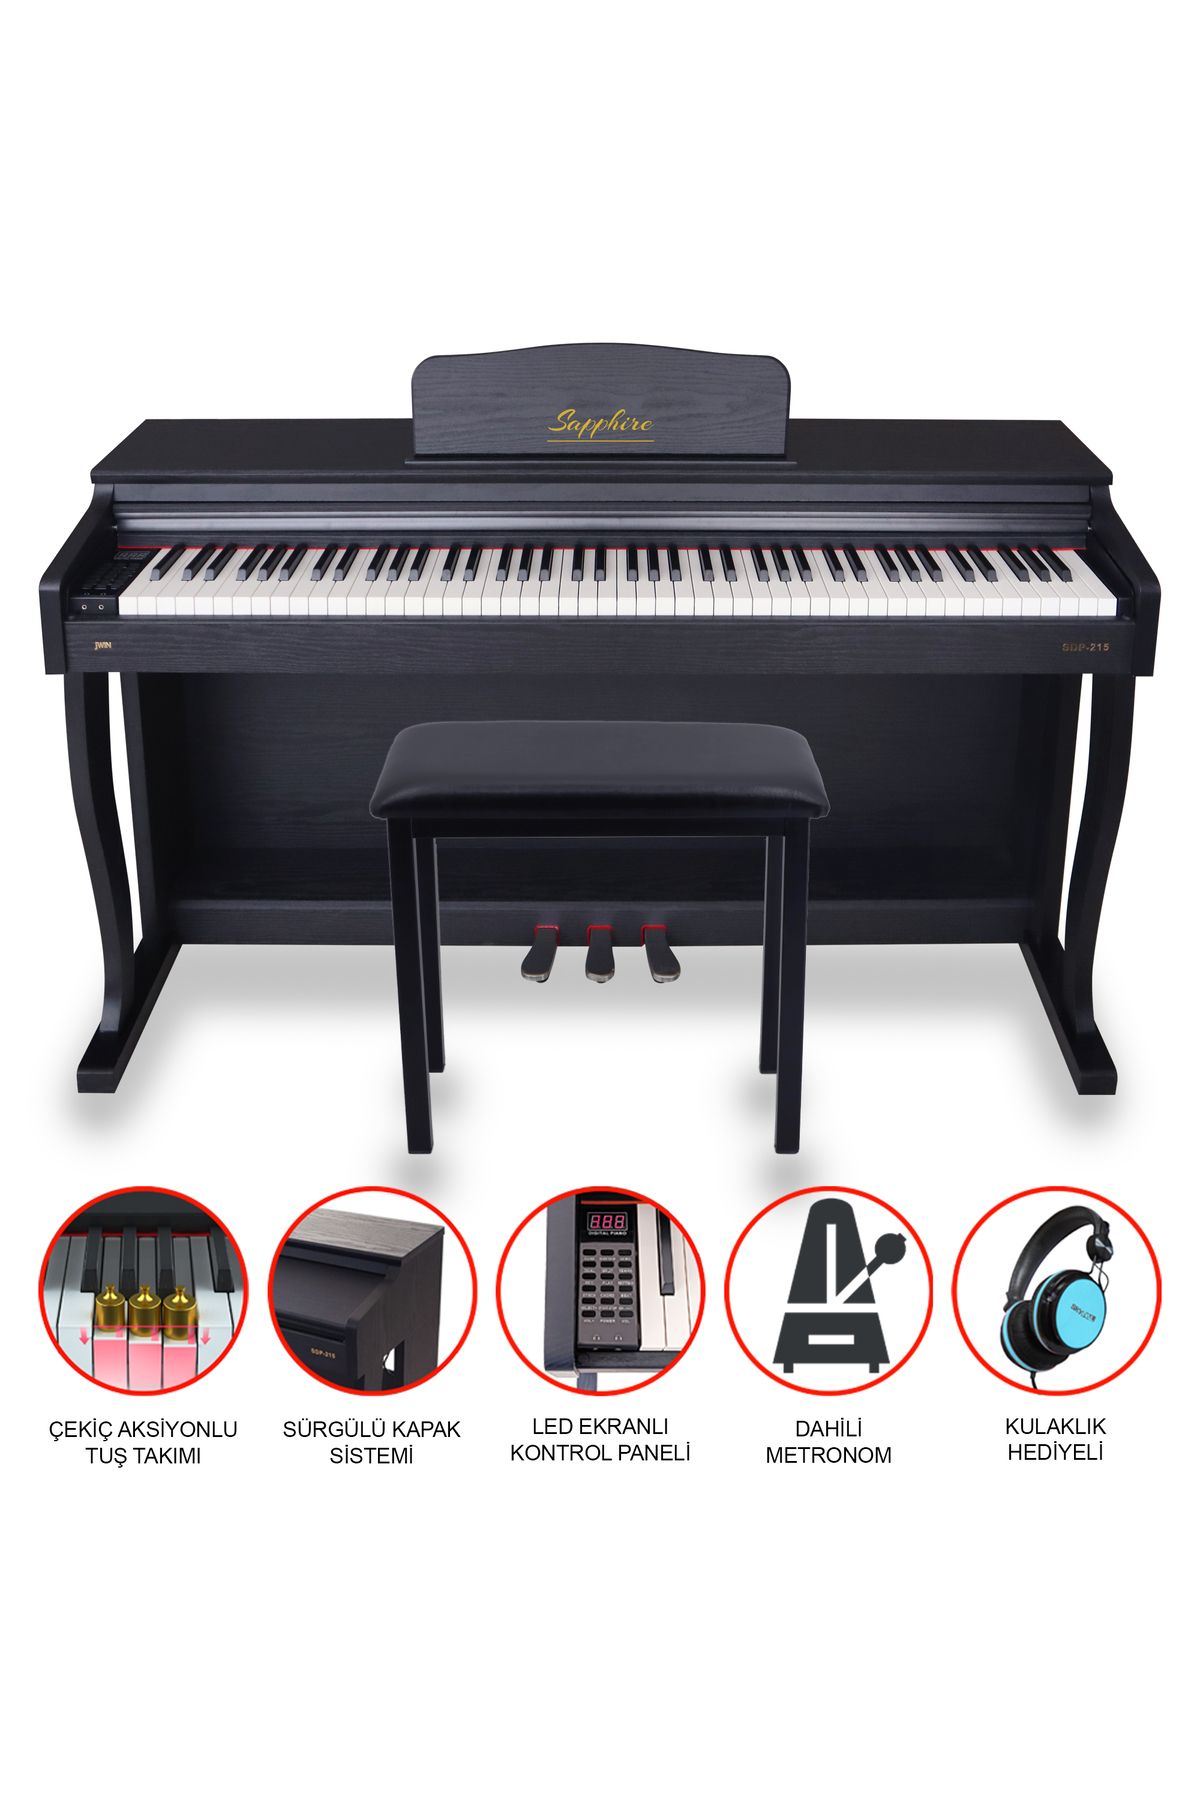 JWIN Sapphire Sdp-215 Siyah Çekiç Aksiyonlu Dijital Piyano Seti - Siyah (TABURE VE KULAKLIK HEDİYELİ)